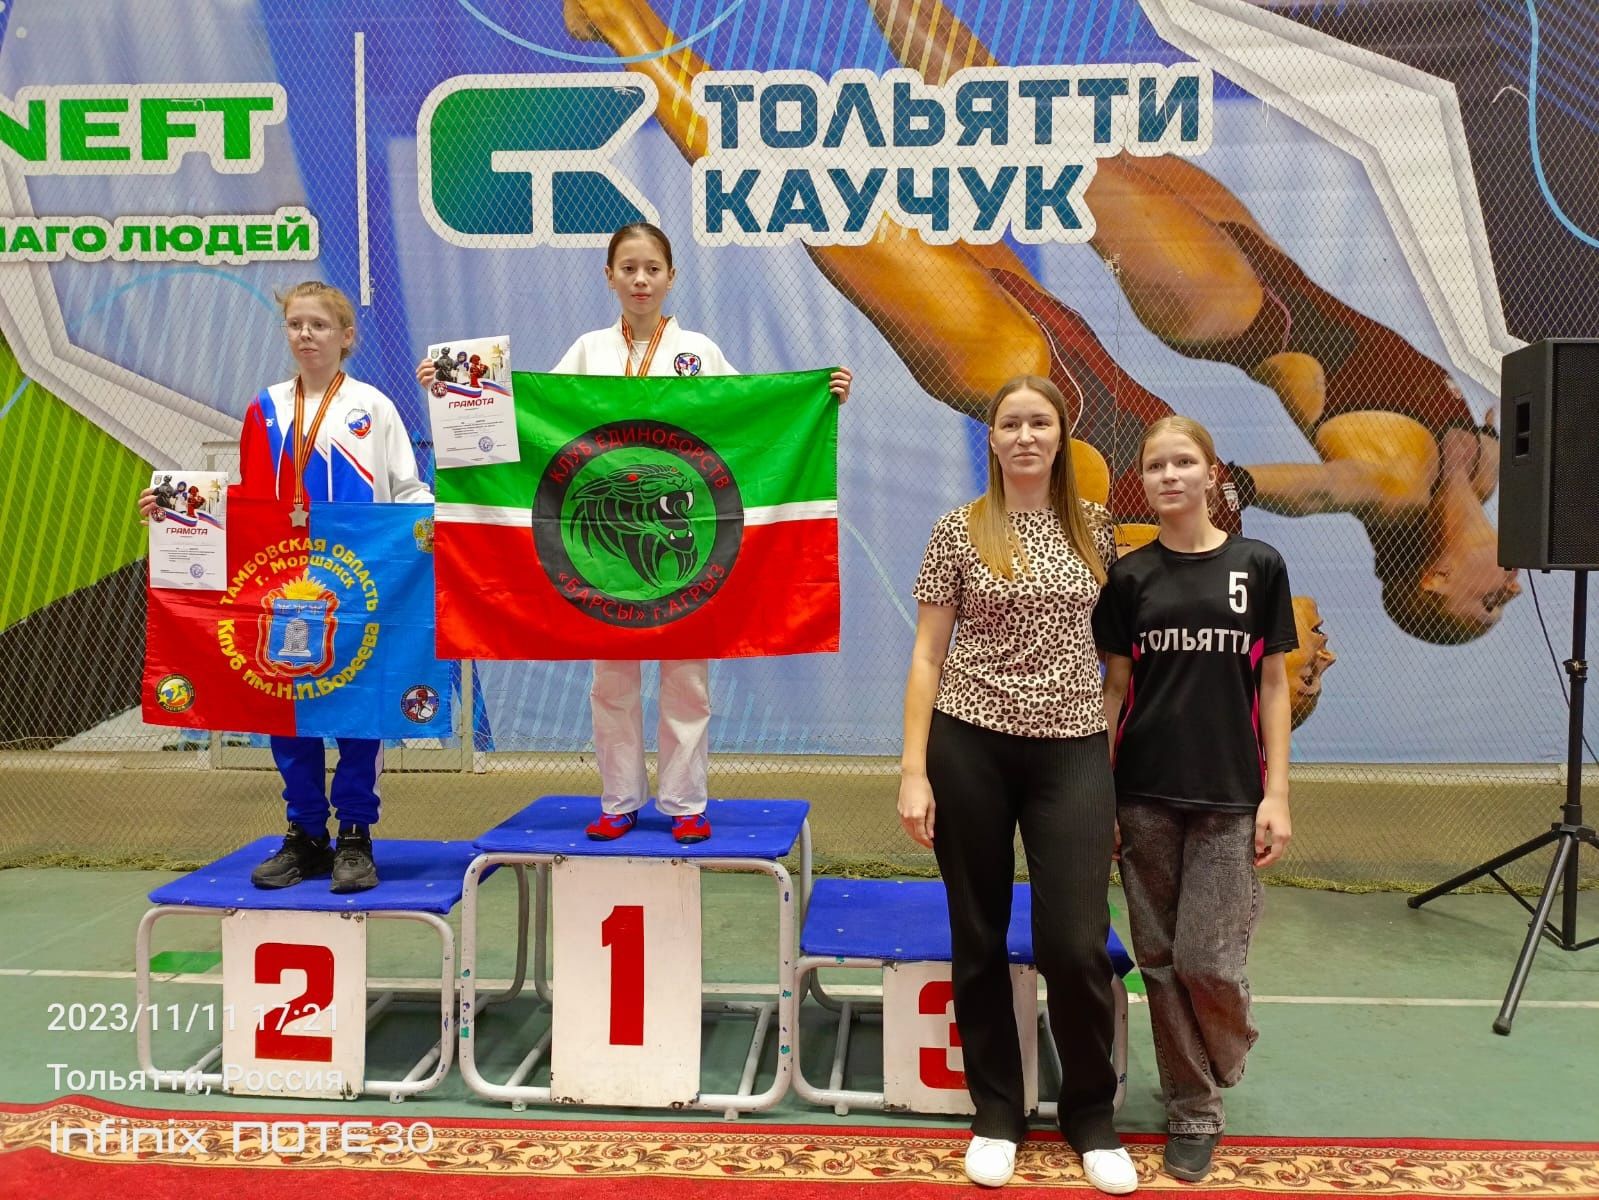 Спортсмены из Агрыза получили право без отбора участвовать в Первенстве и Чемпионате России по Абсолютно реальному бою